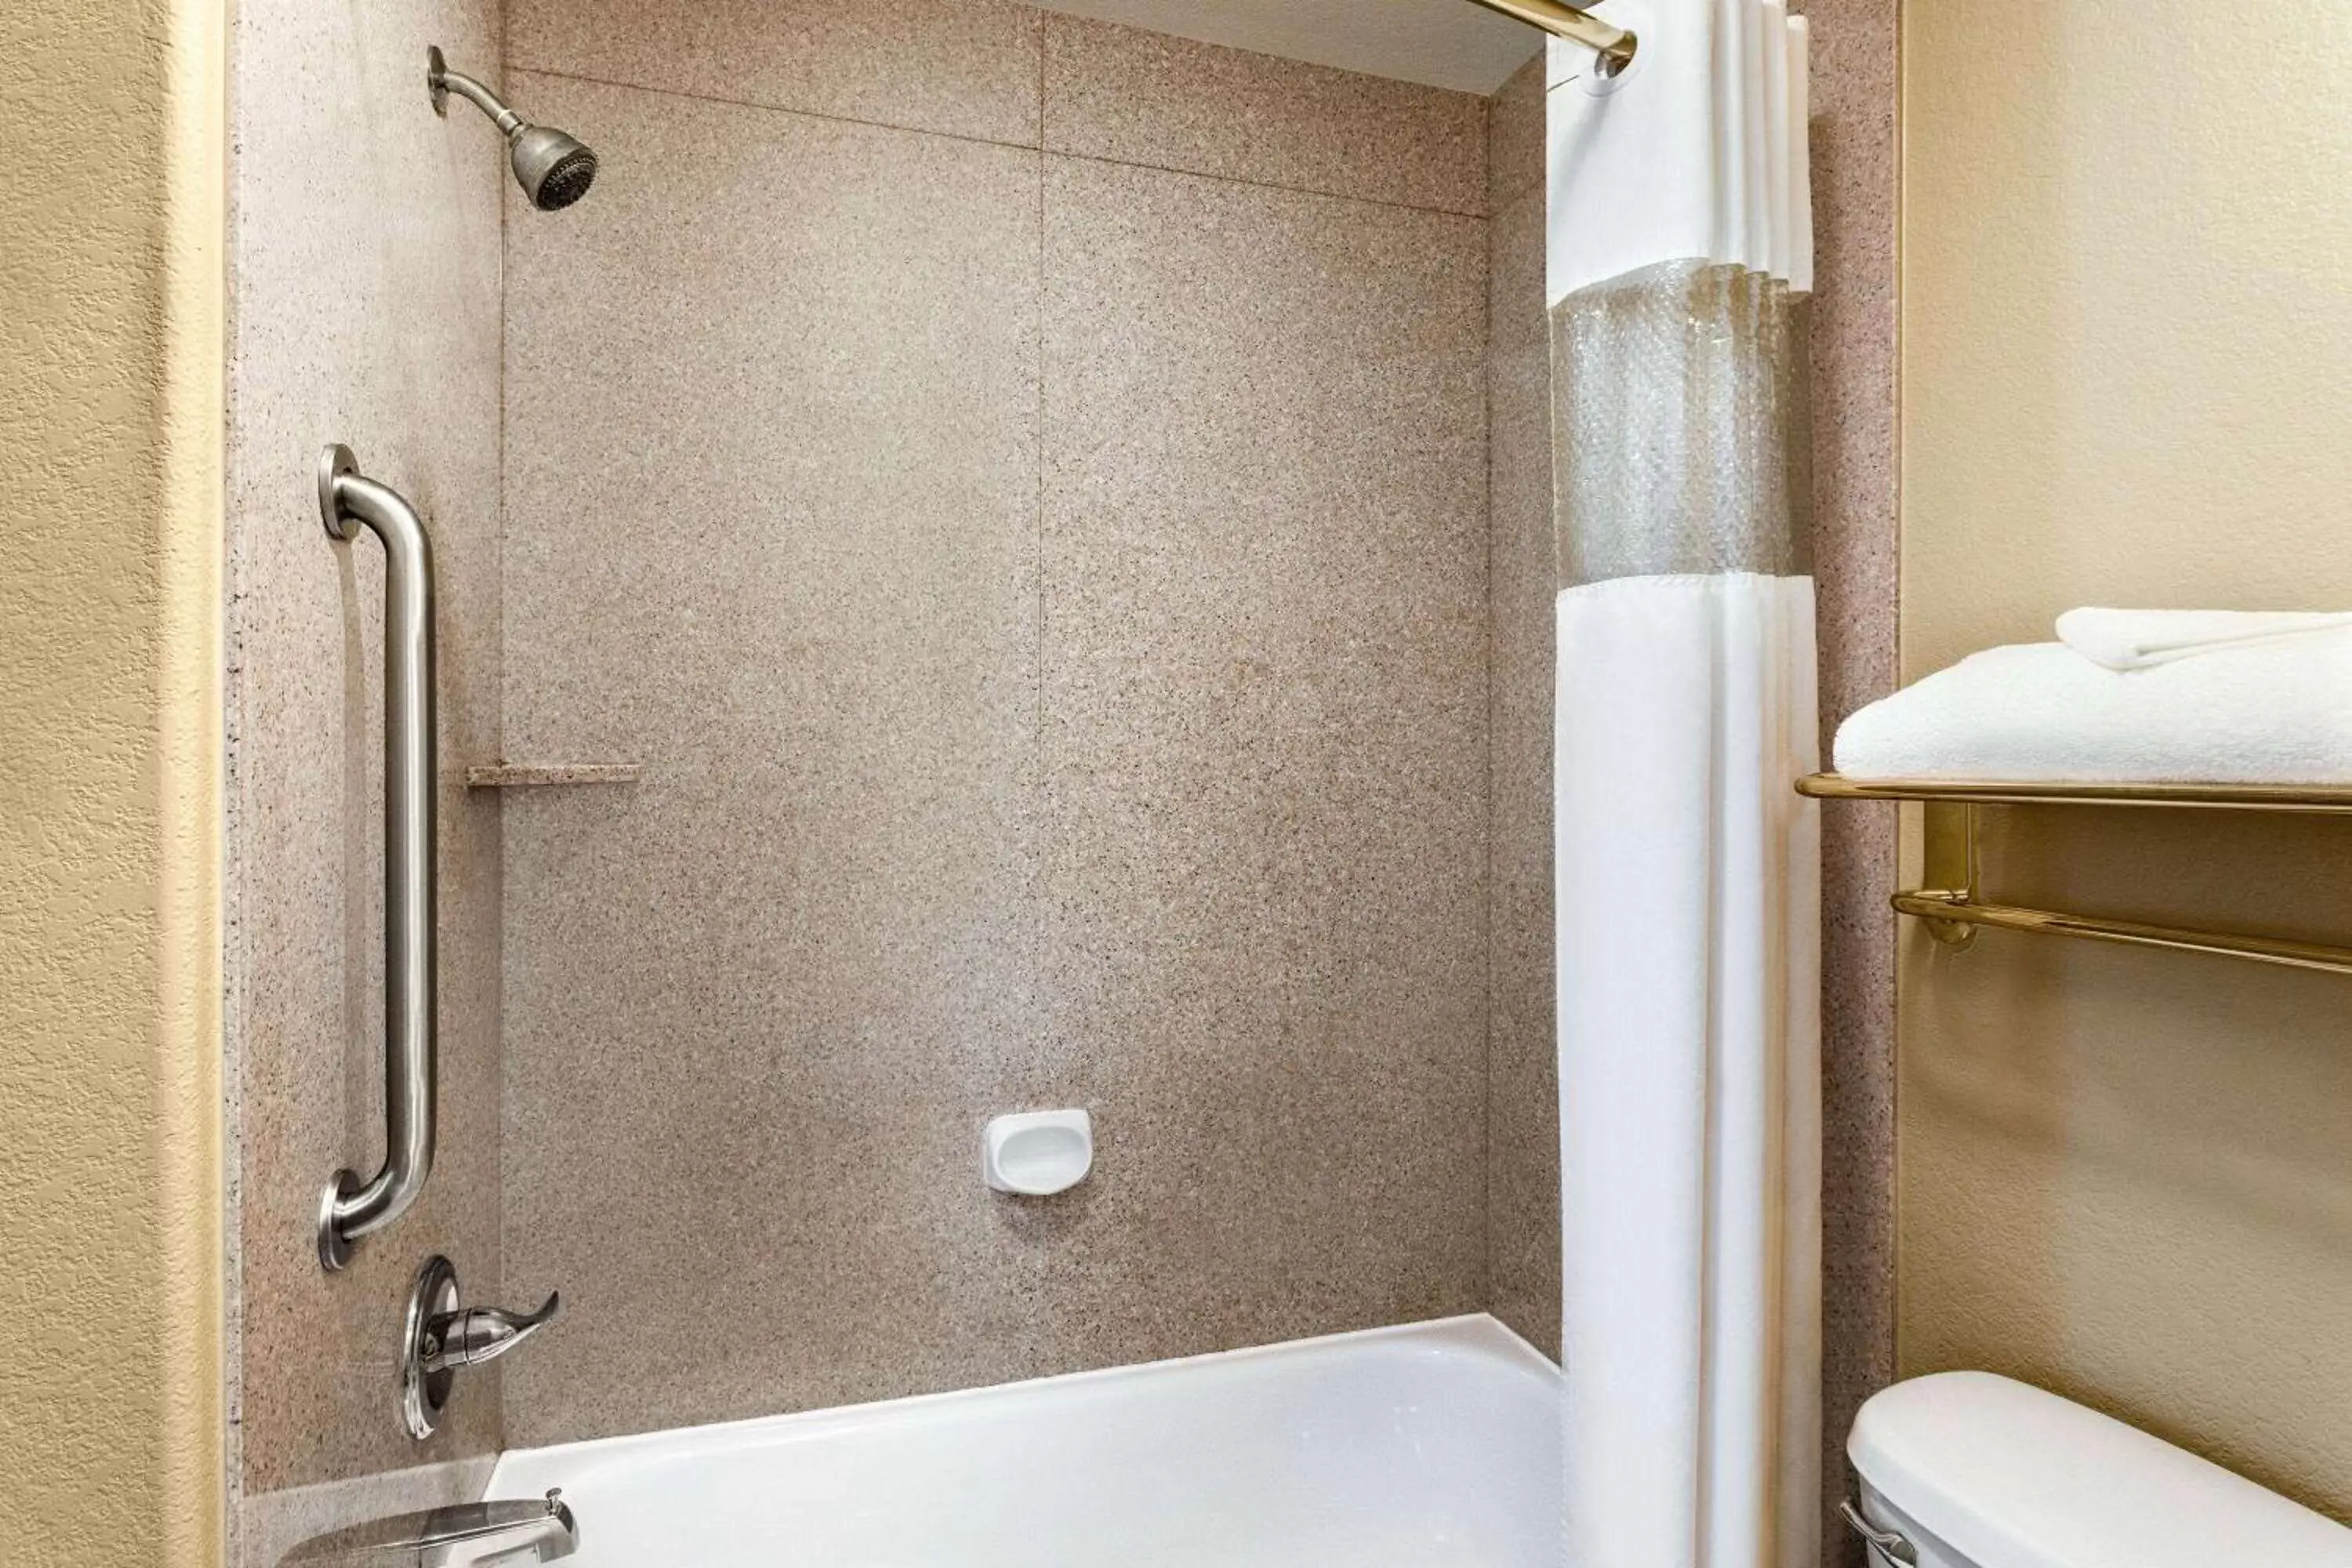 TV and multimedia, Bathroom in Baymont by Wyndham Wichita Falls